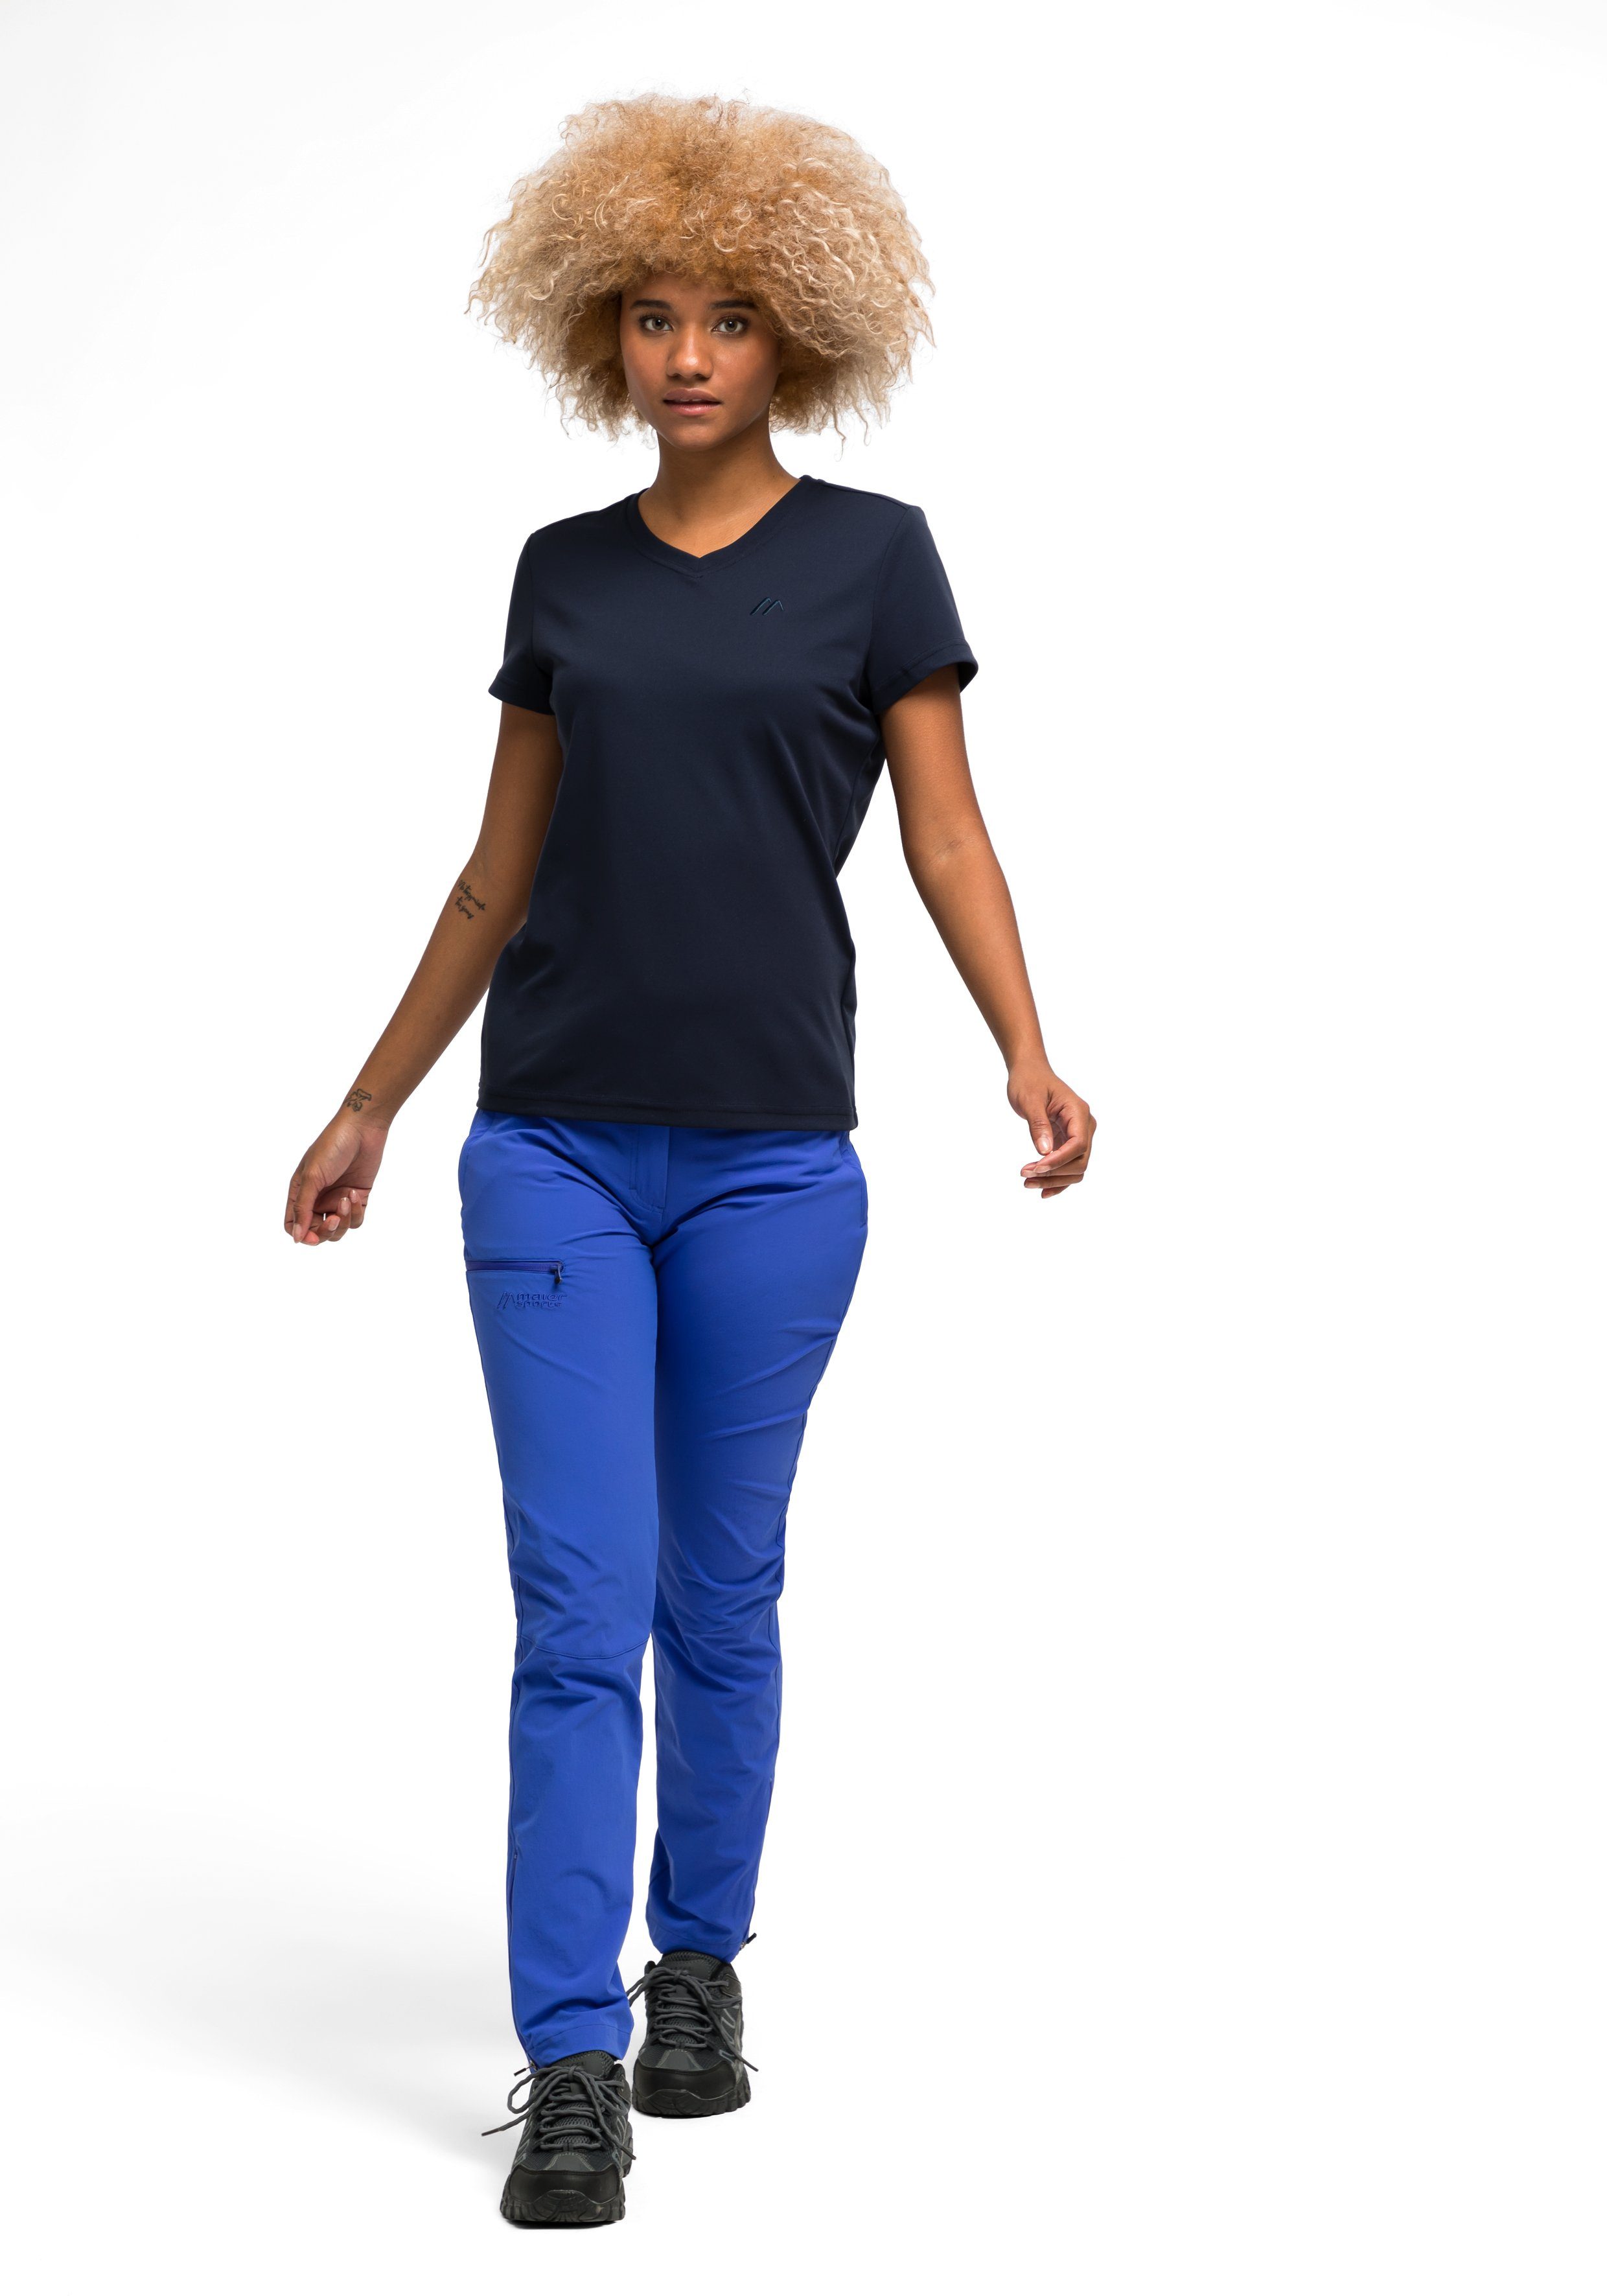 Wandern Sports und Maier Trudy Freizeit für dunkelblau Kurzarmshirt Damen T-Shirt, Funktionsshirt